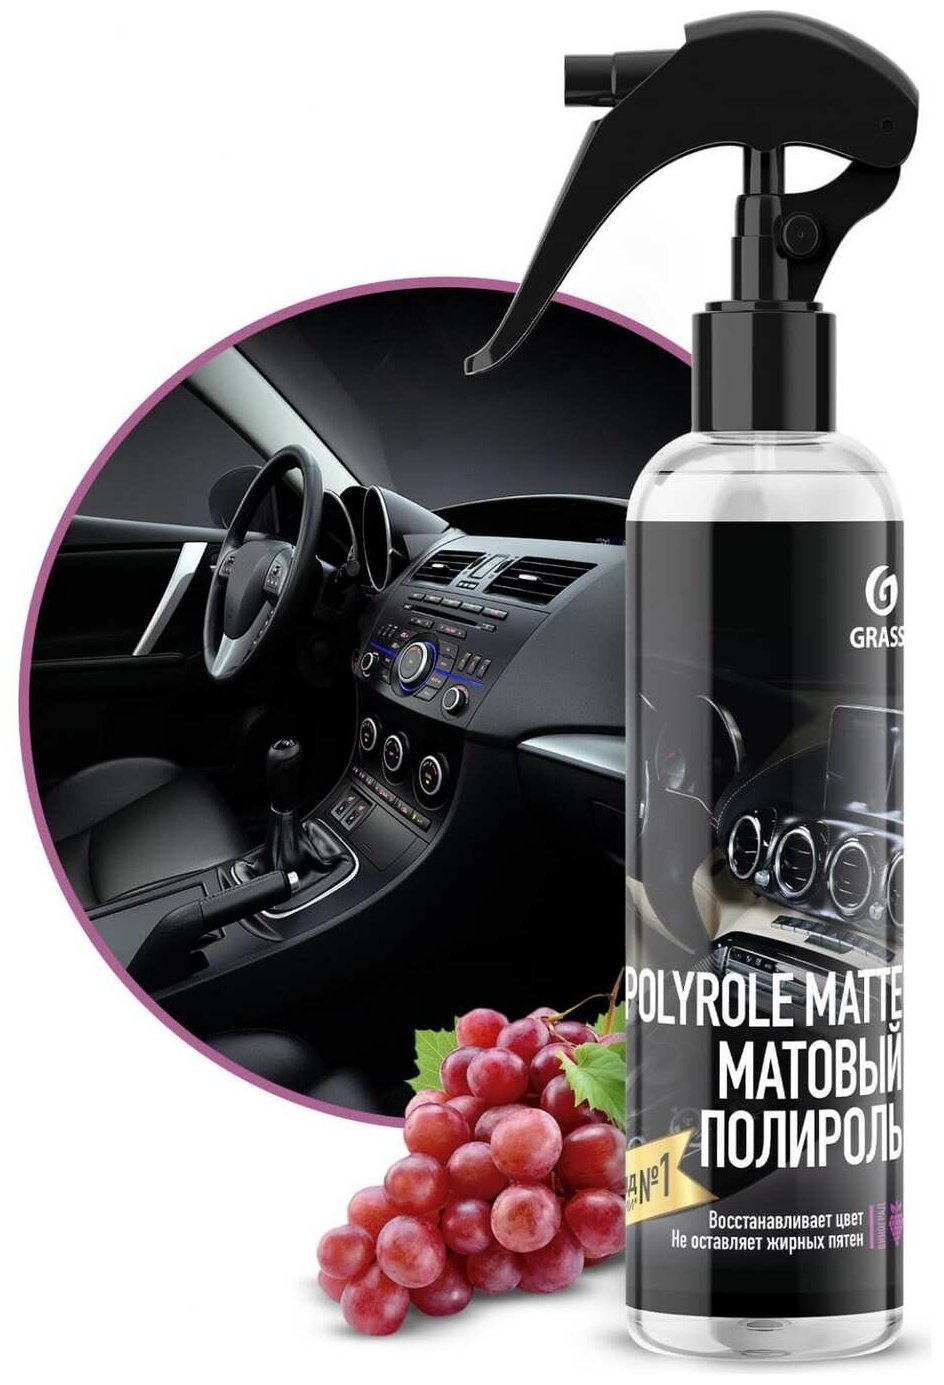 Grass Полироль-очиститель пластика матовый Polyrole Matte виноград для салона автомобиля 149250